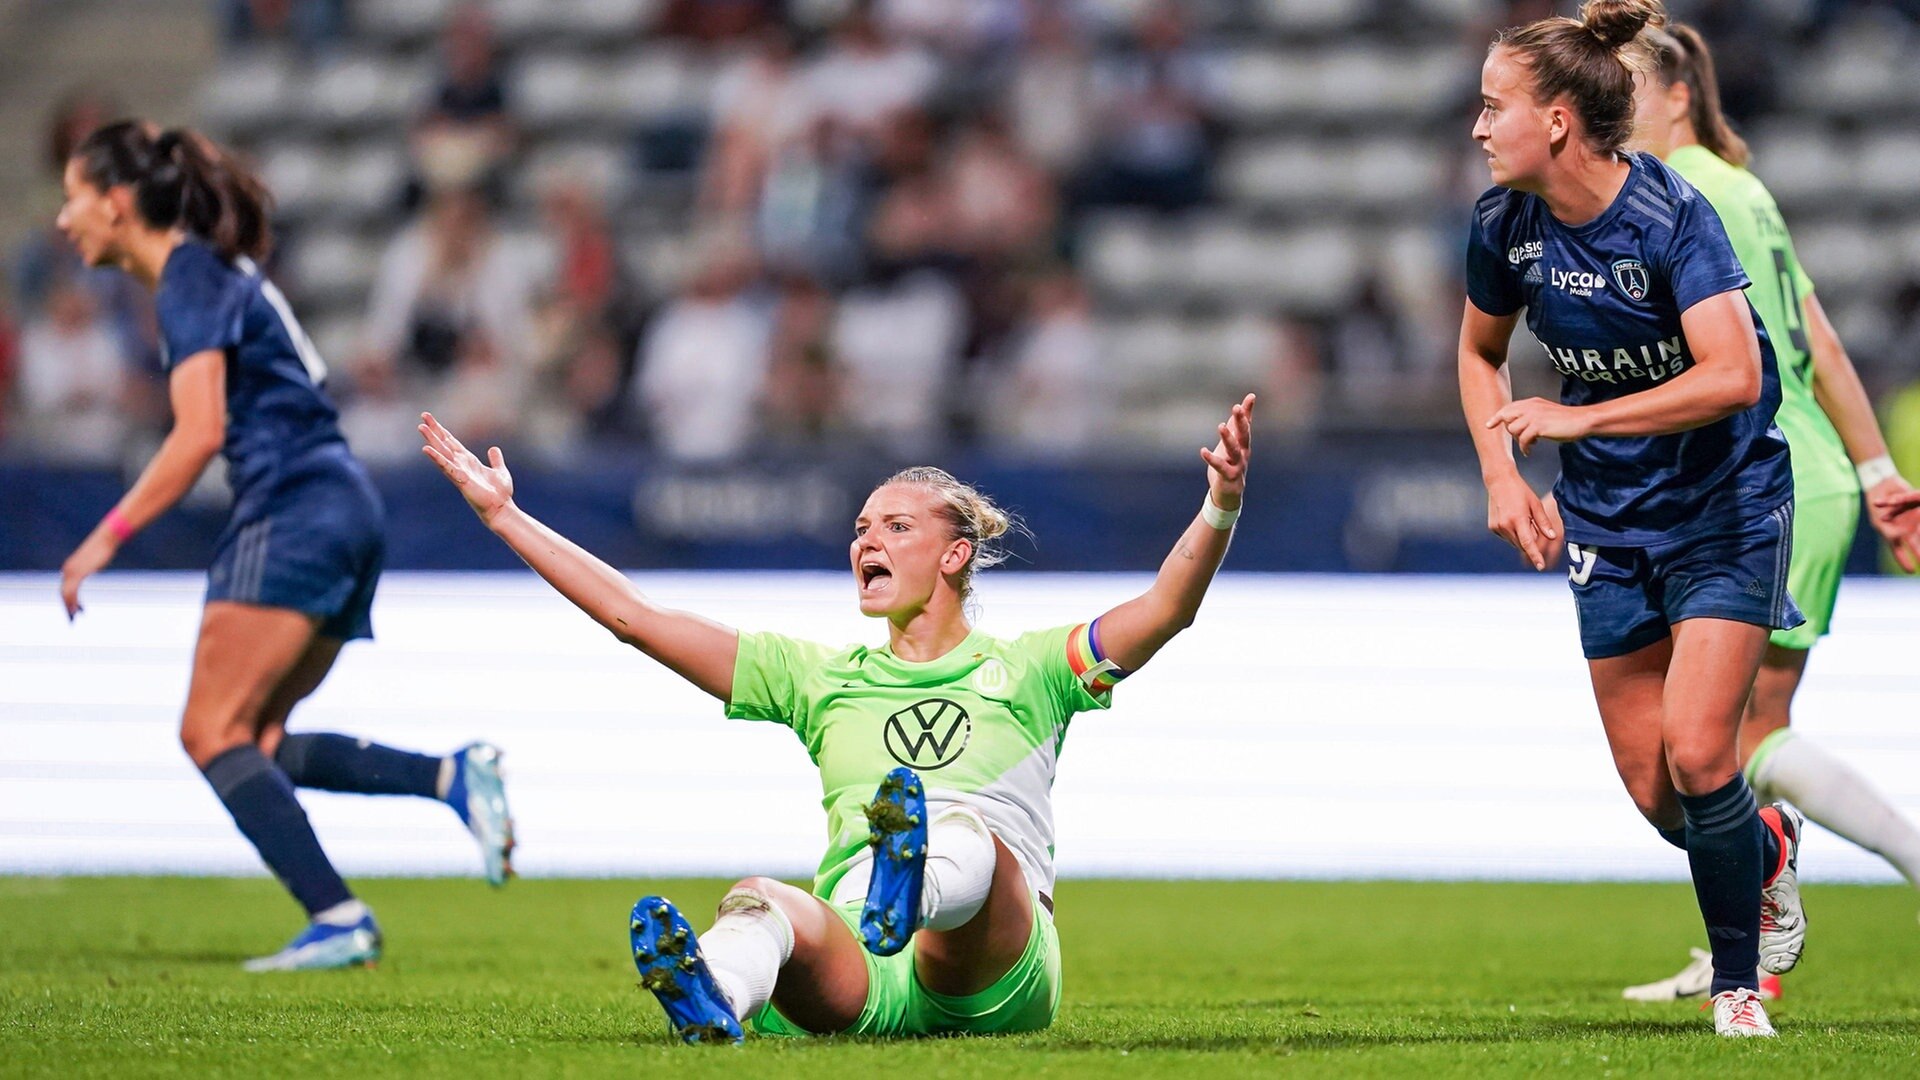 Champions League Popp rettet VfL-Frauen Remis in Paris NDR.de - Sport